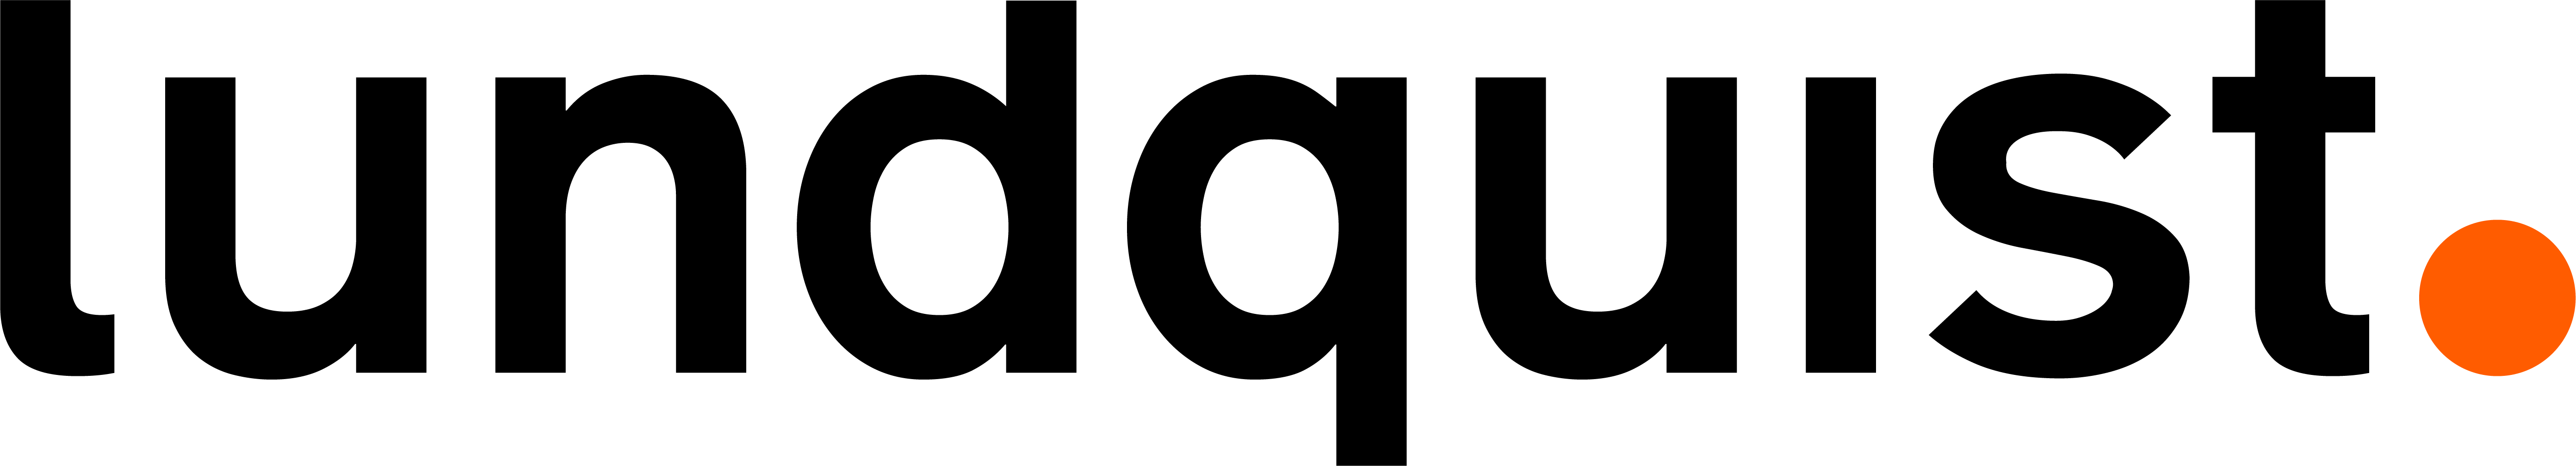 Lundquist srl logo